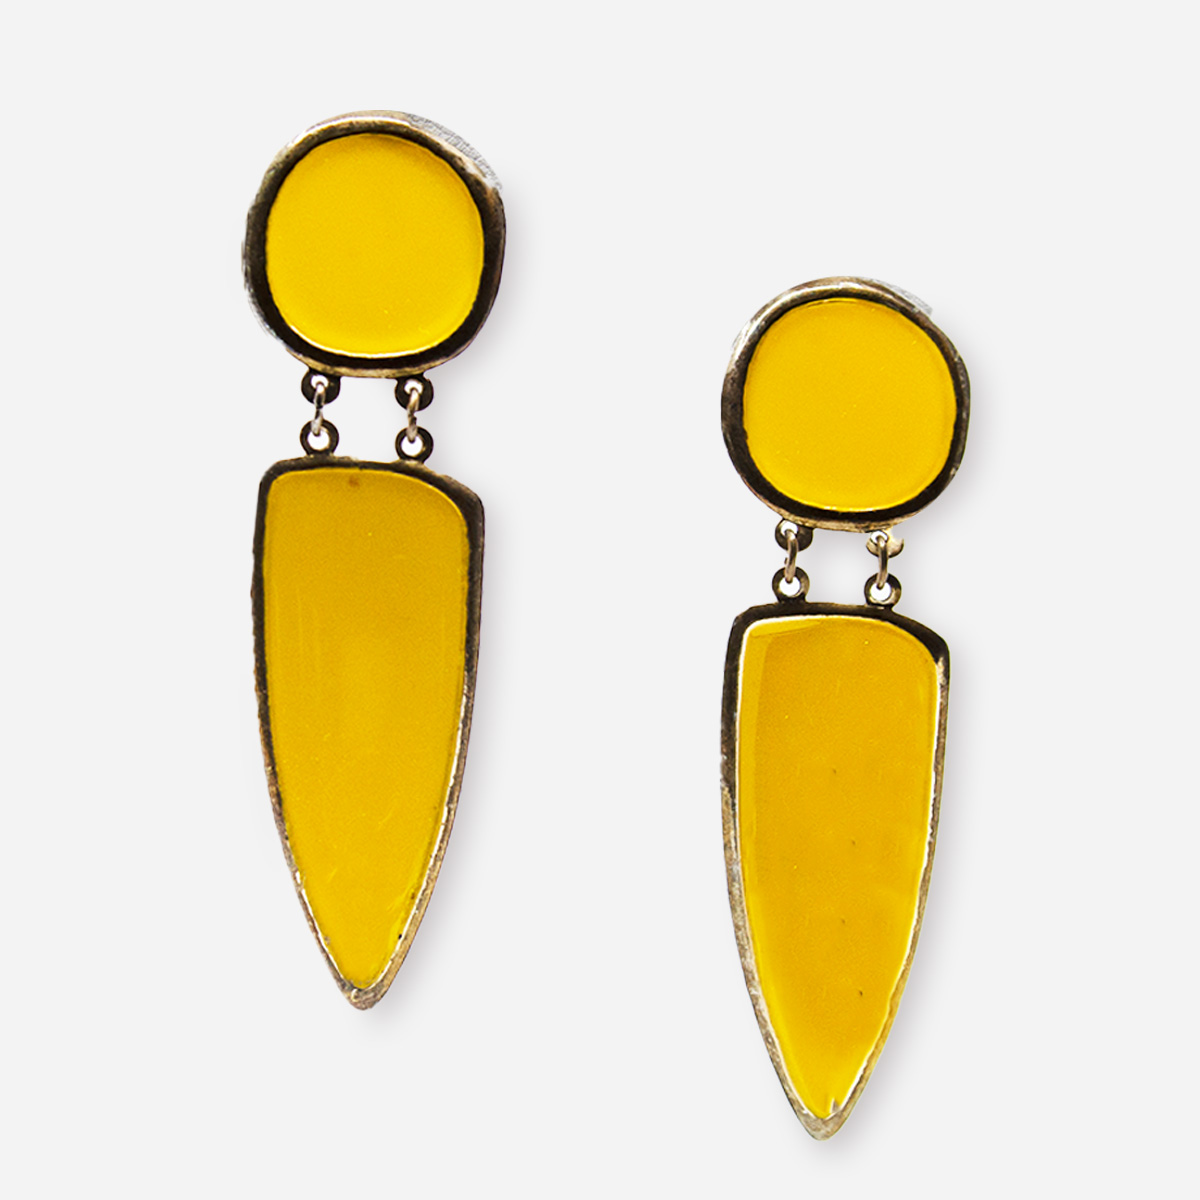 Yellow dangle earrings